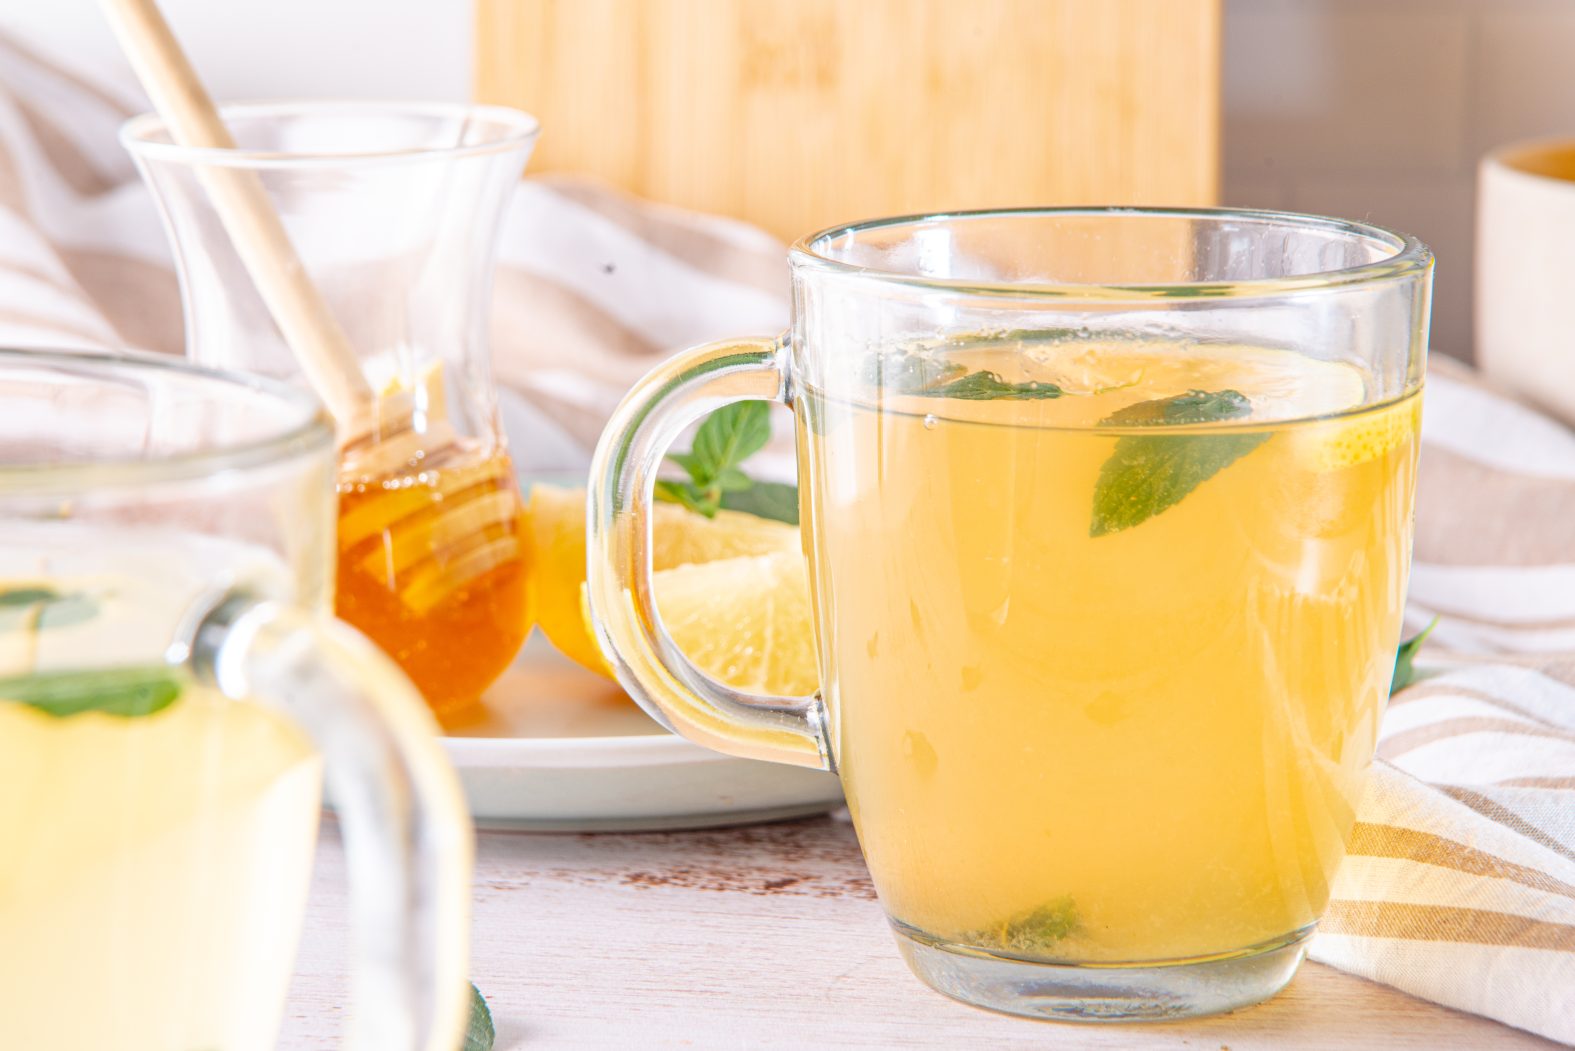  Honey Citrus Mint Tea Recipe
